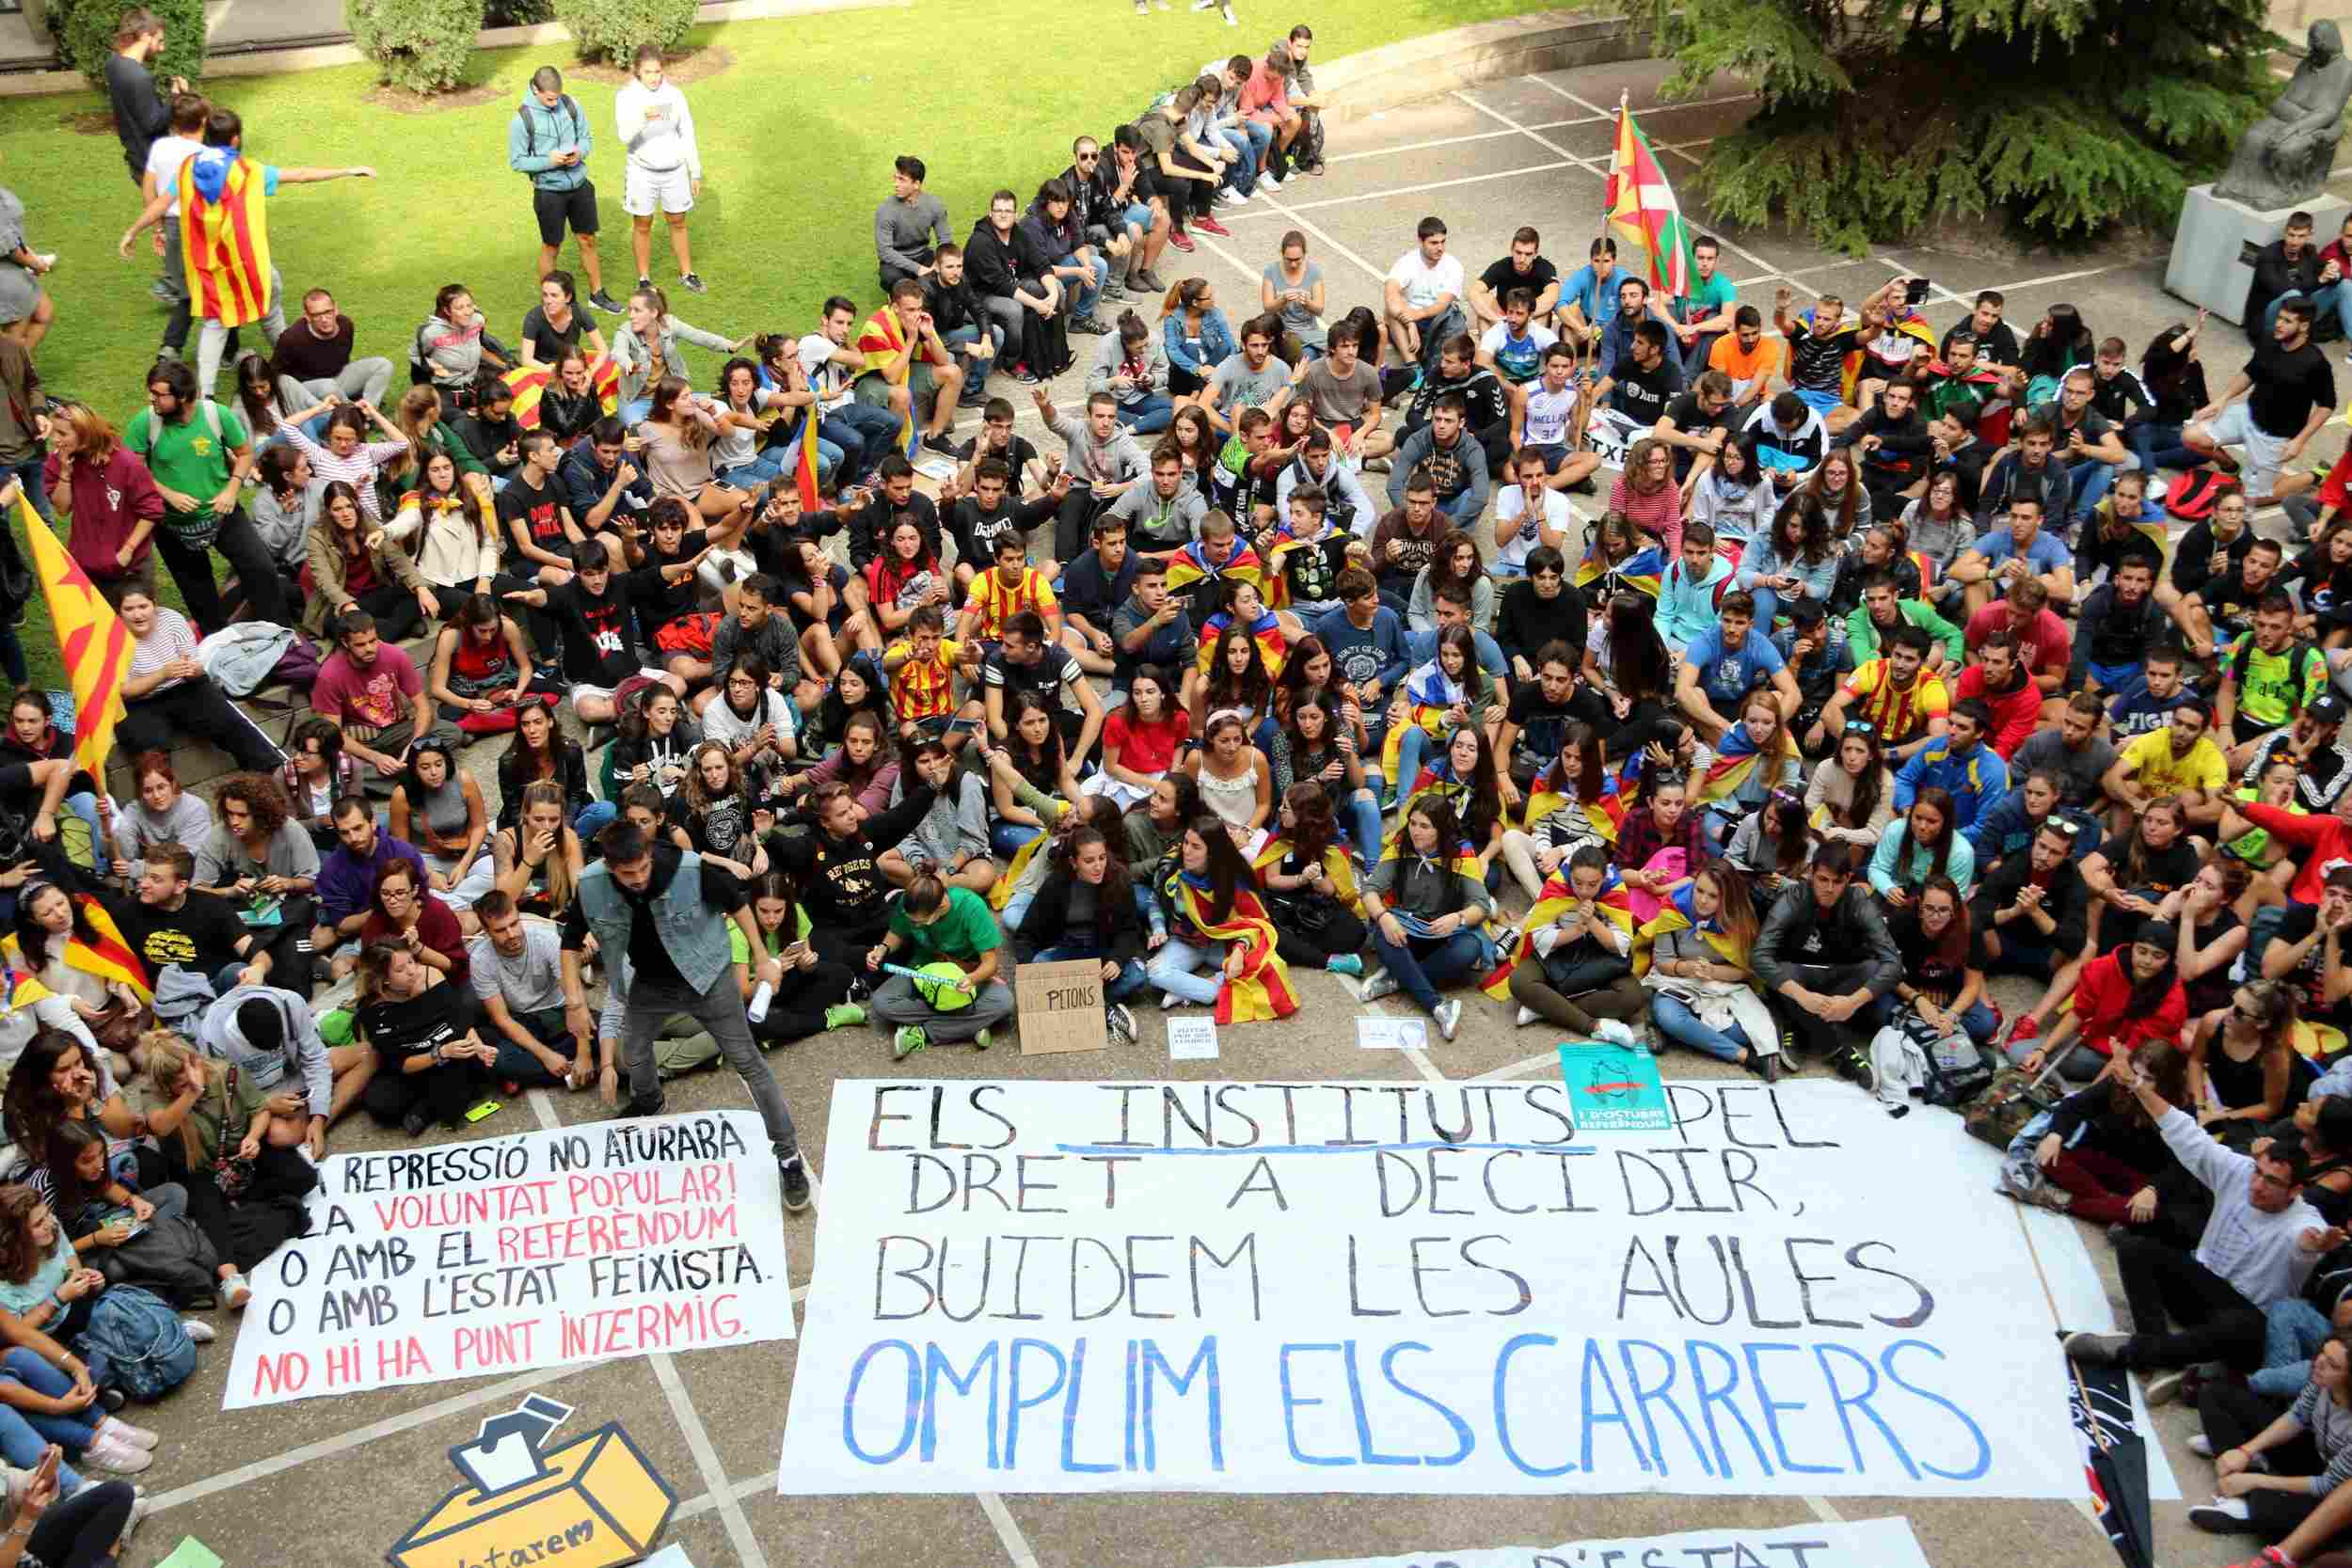 Els universitaris omplen els carrers a punt per a una “aturada general”